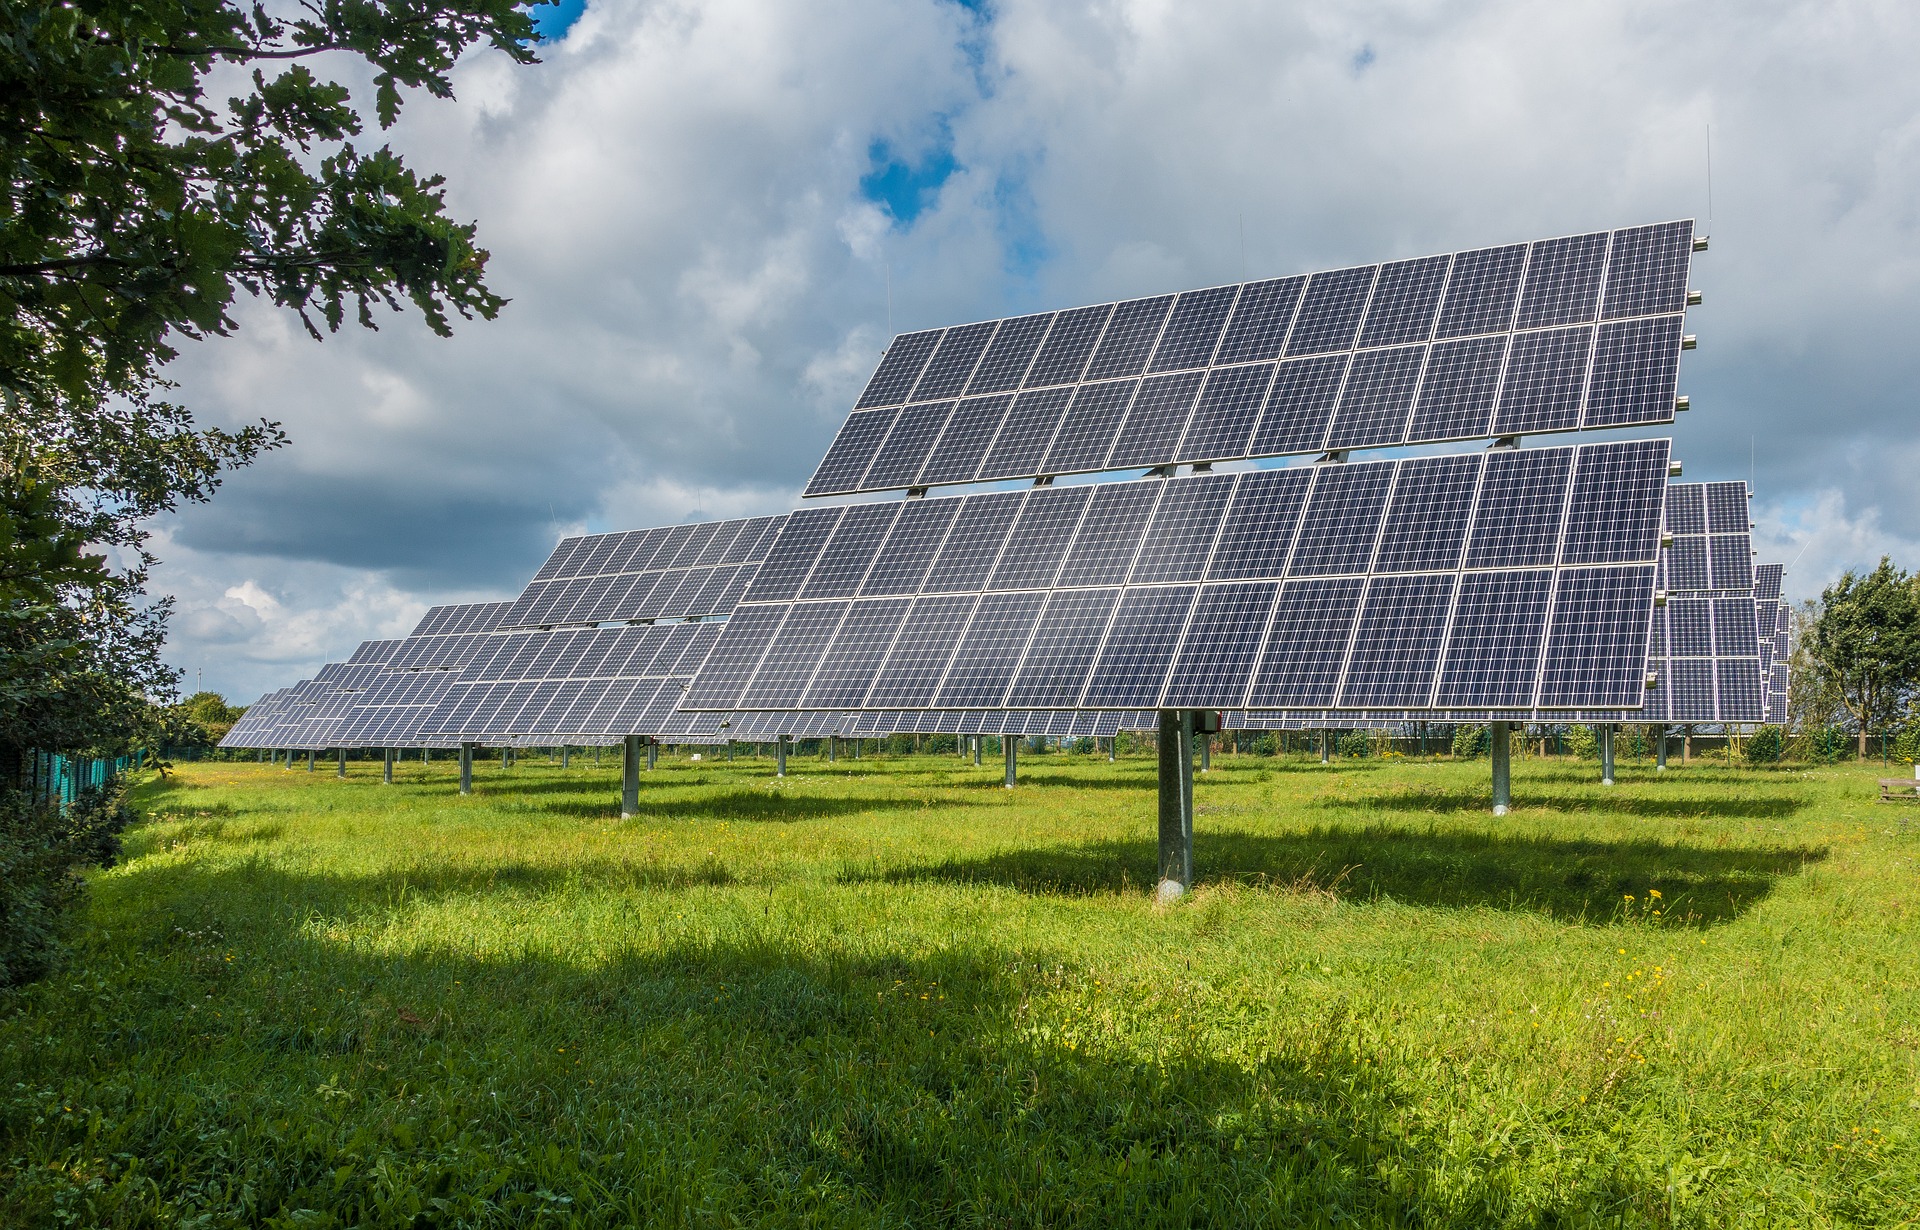 Energía solar, la solución que para el Chocó propone el visionario Ermanno Traverso 